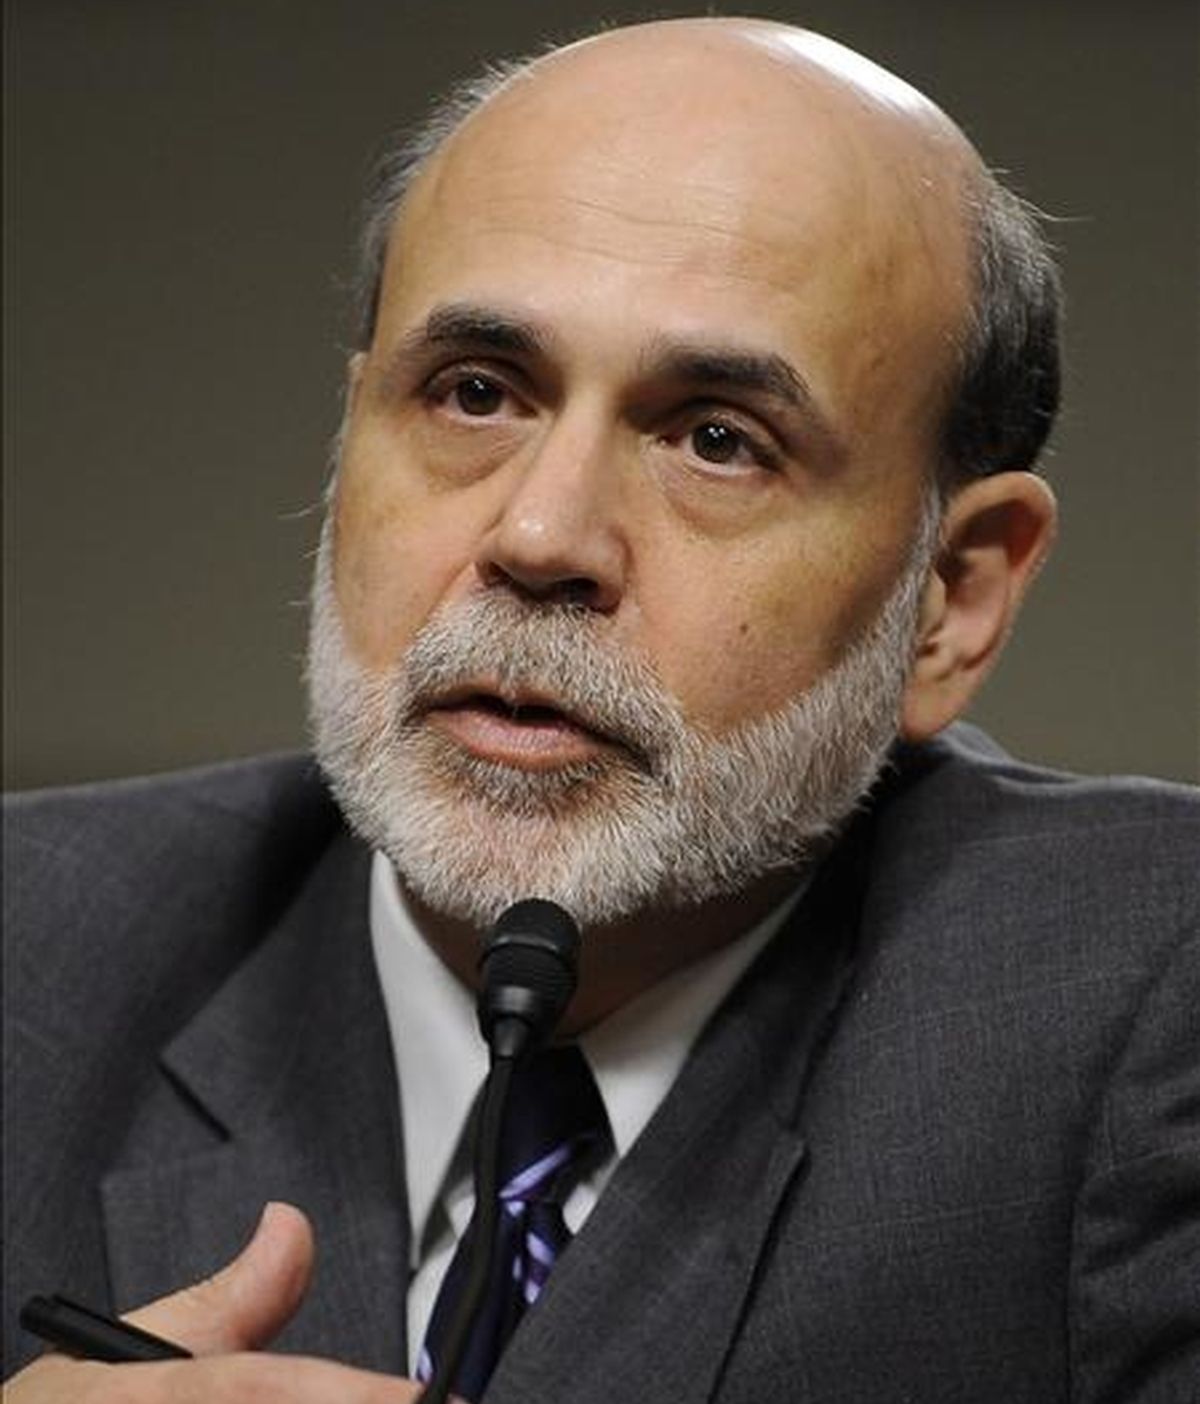 El presidente de la Reserva Federal (Fed), Ben Bernanke, habla este 21 de julio durante la audiencia del Comité del Senado sobre Banca, Vivienda y Asuntos Urbanos en el Capitolio de Washington, EE.UU. EFE